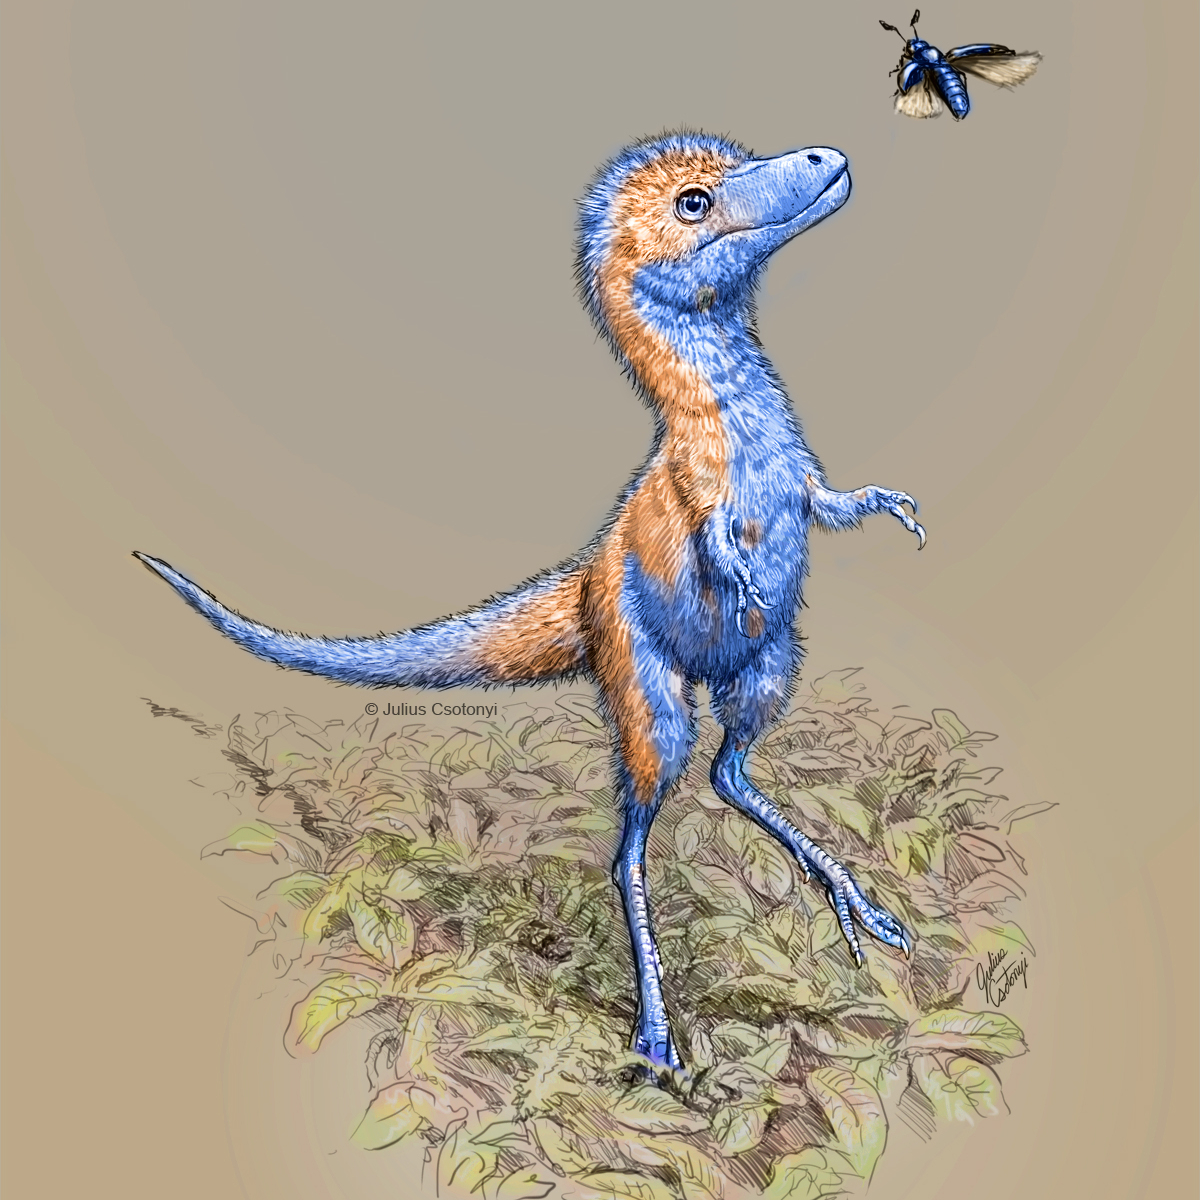 210125-baby-tyrannosaurus-juvie_01_v08_credit-julius-csotonyi-square-1200px.jpg